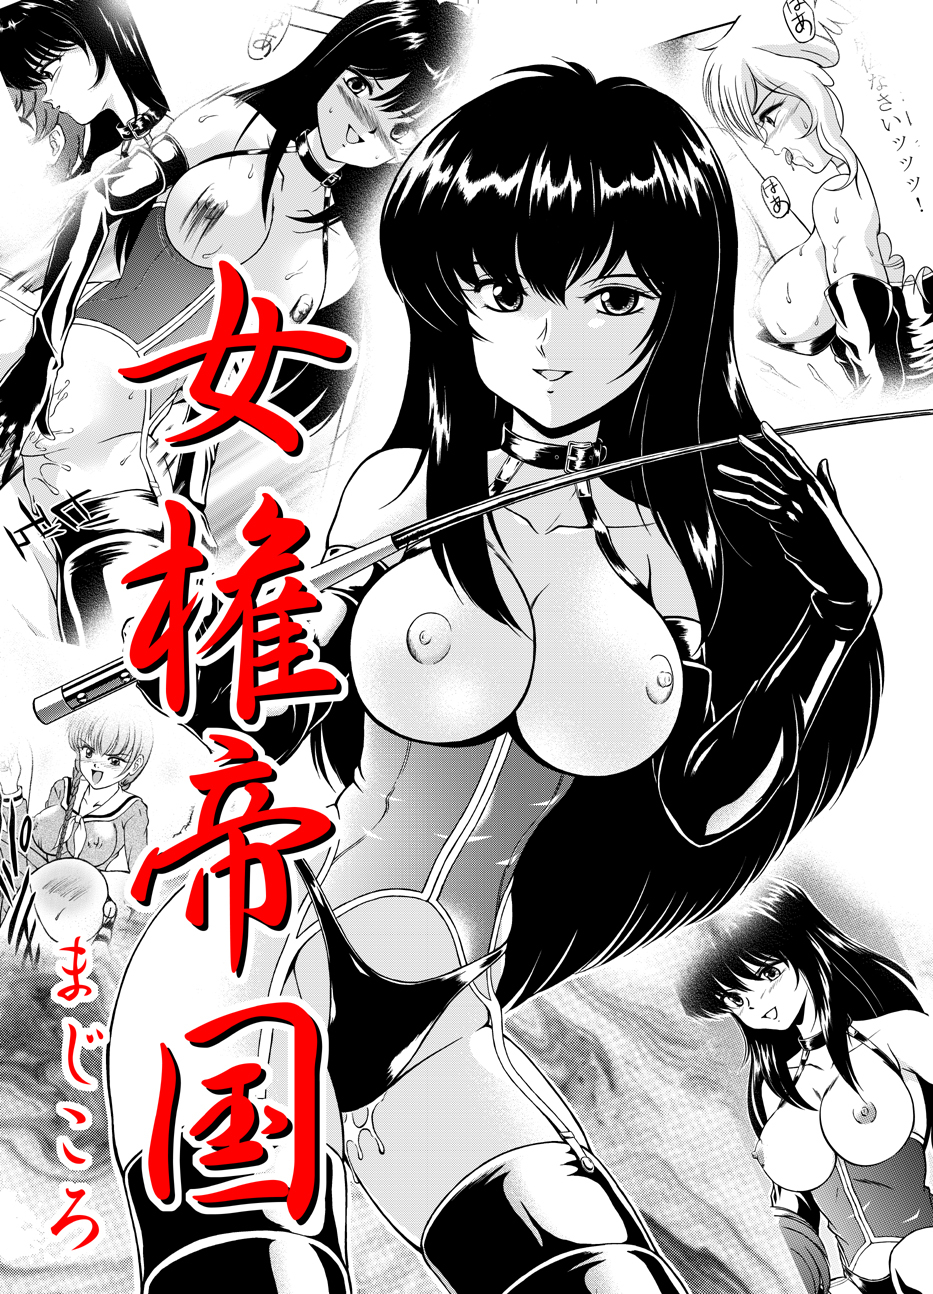 Kingdom of women's rights hentai manga